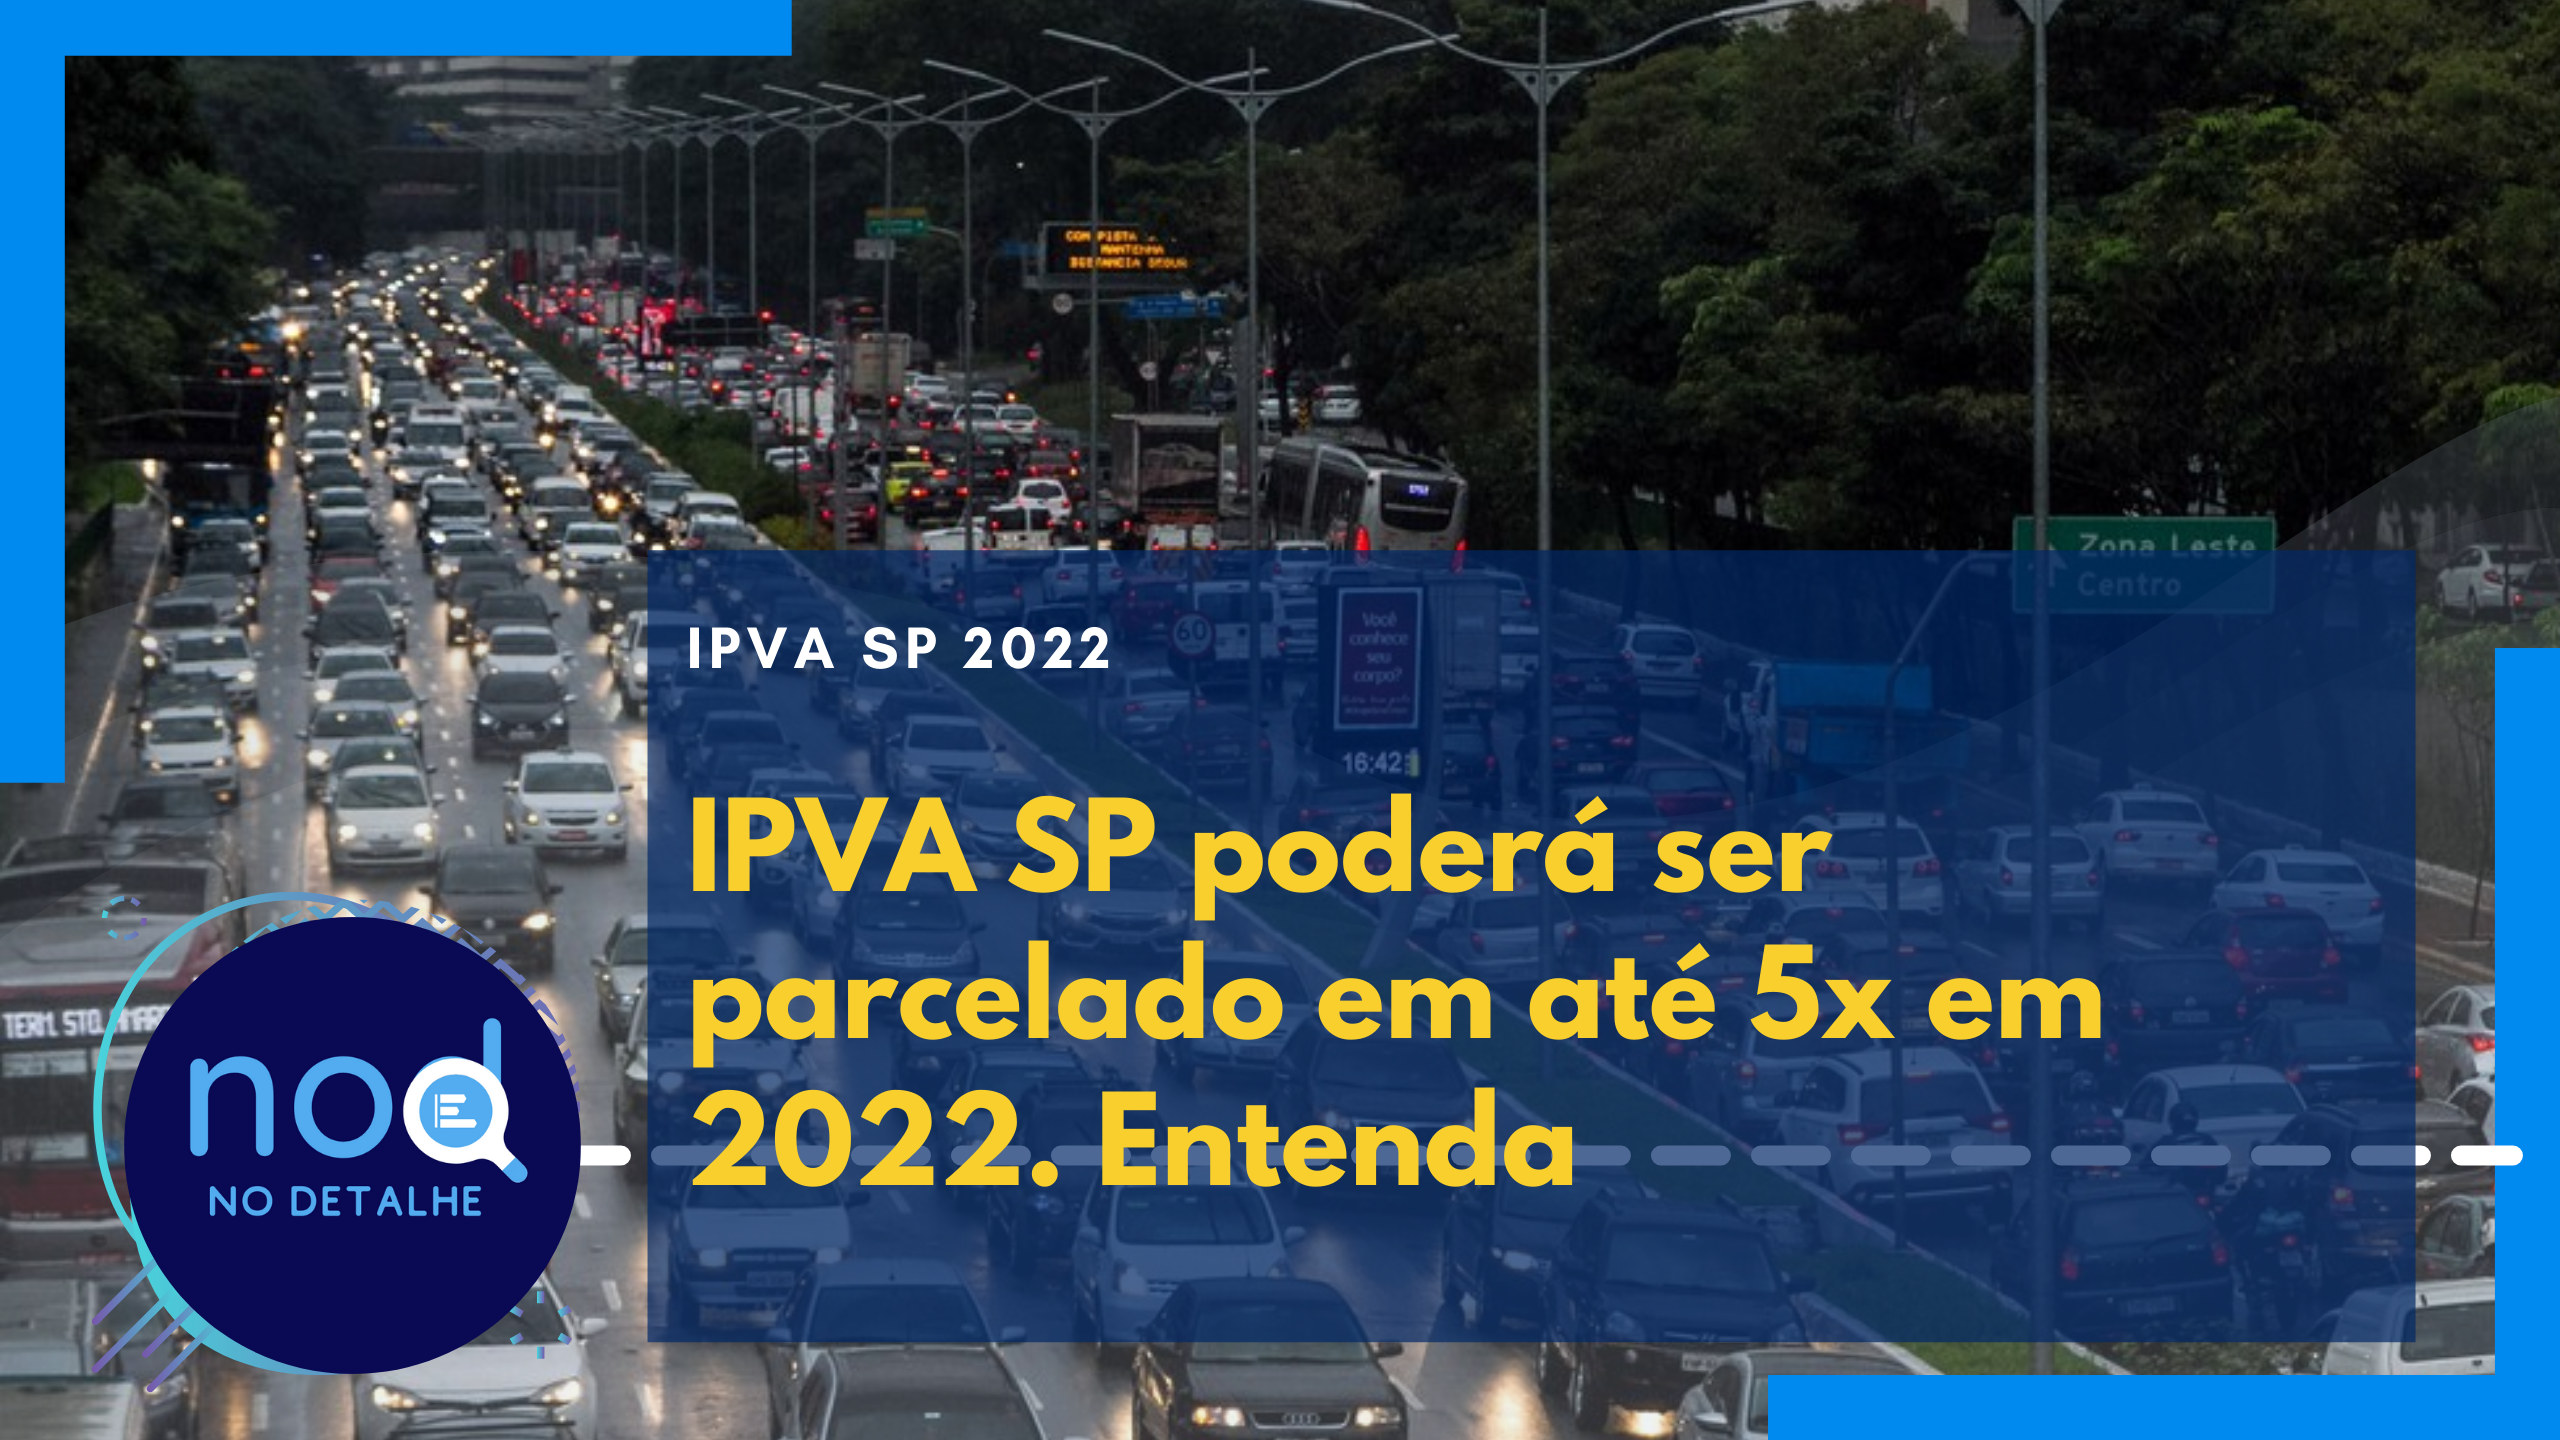 IPVA SP poderá ser parcelado em até 5x em 2022